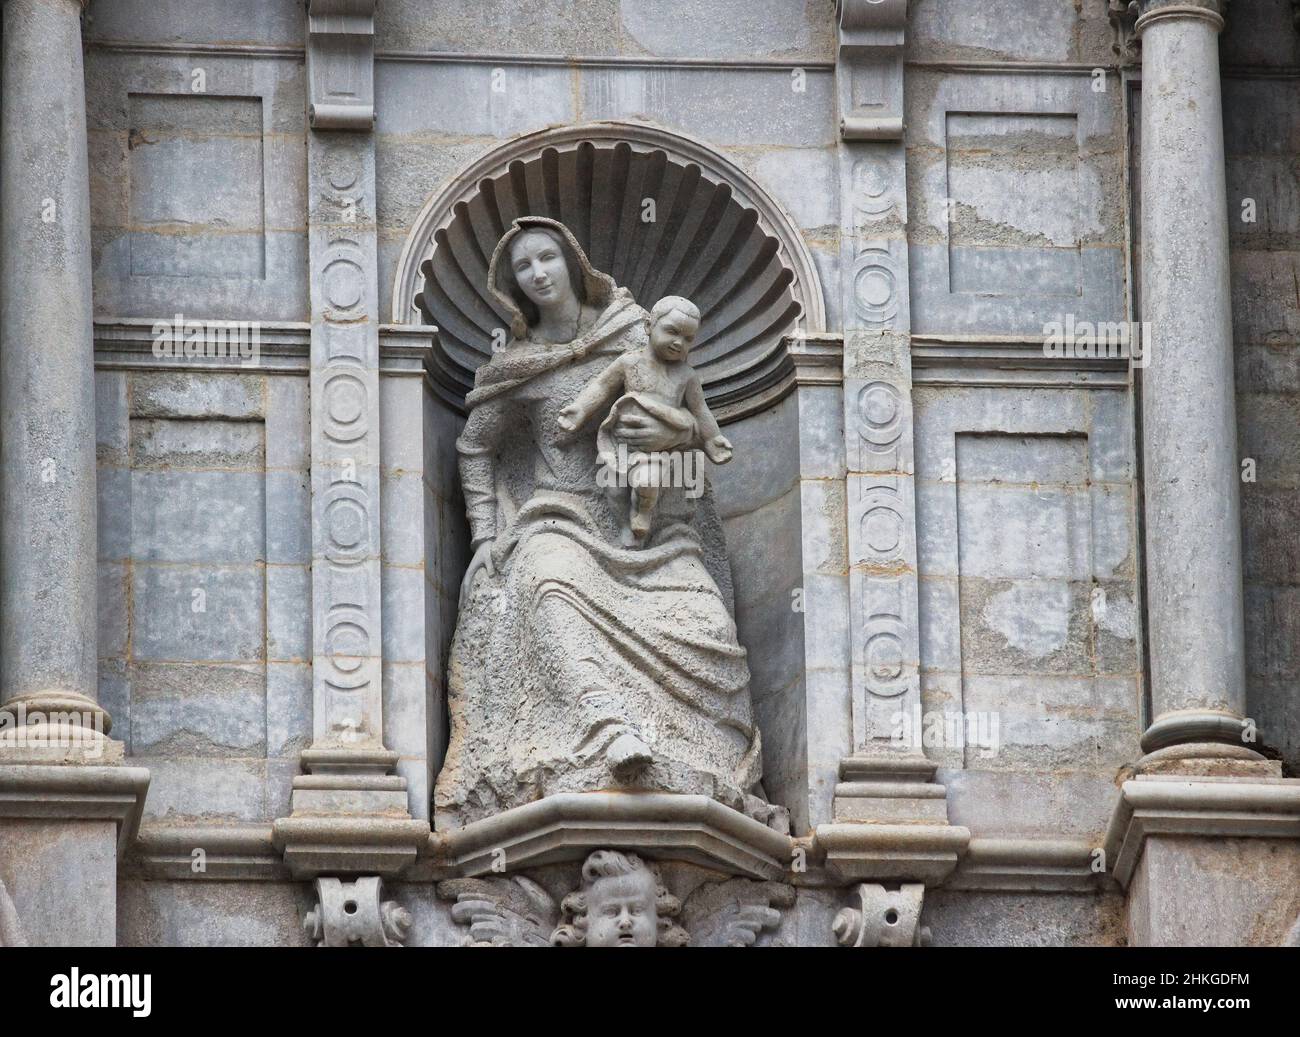 Alcuni dettagli della splendida cattedrale catalana-gotica, di Girona, Spagna, Costa Brava Foto Stock